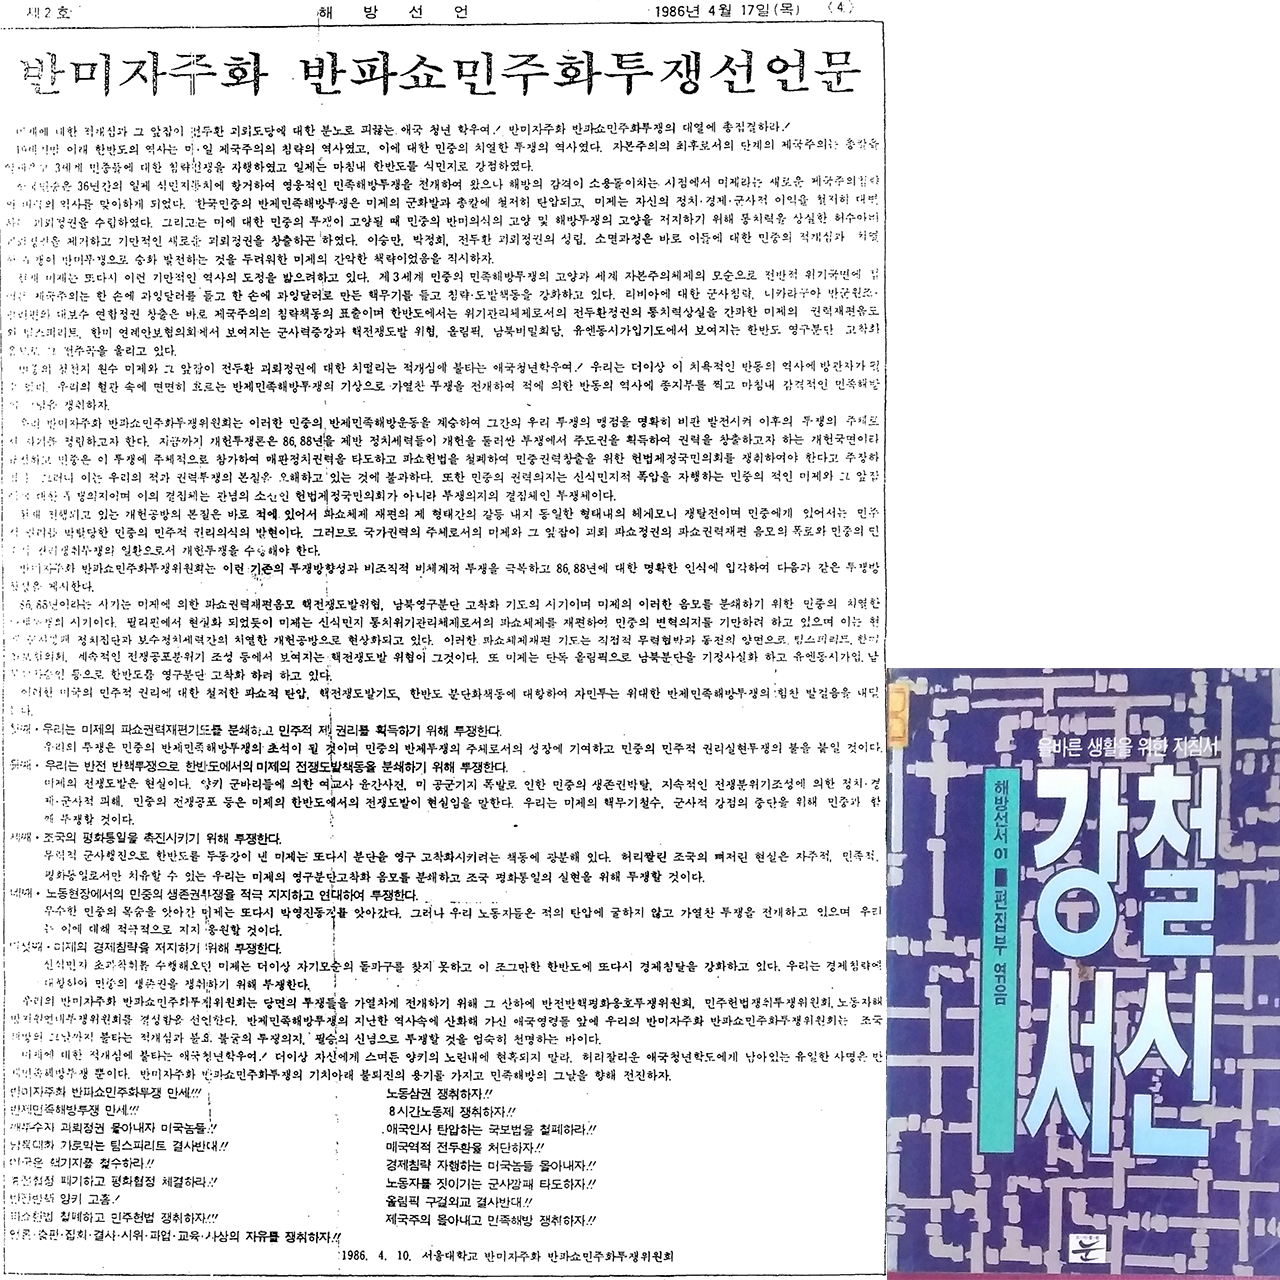  구국학생연맹의 지도 아래 결성된 ‘자민투’의 첫 선언문과 김영환의 강철서신을 나중에 엮어낸 책의 표지